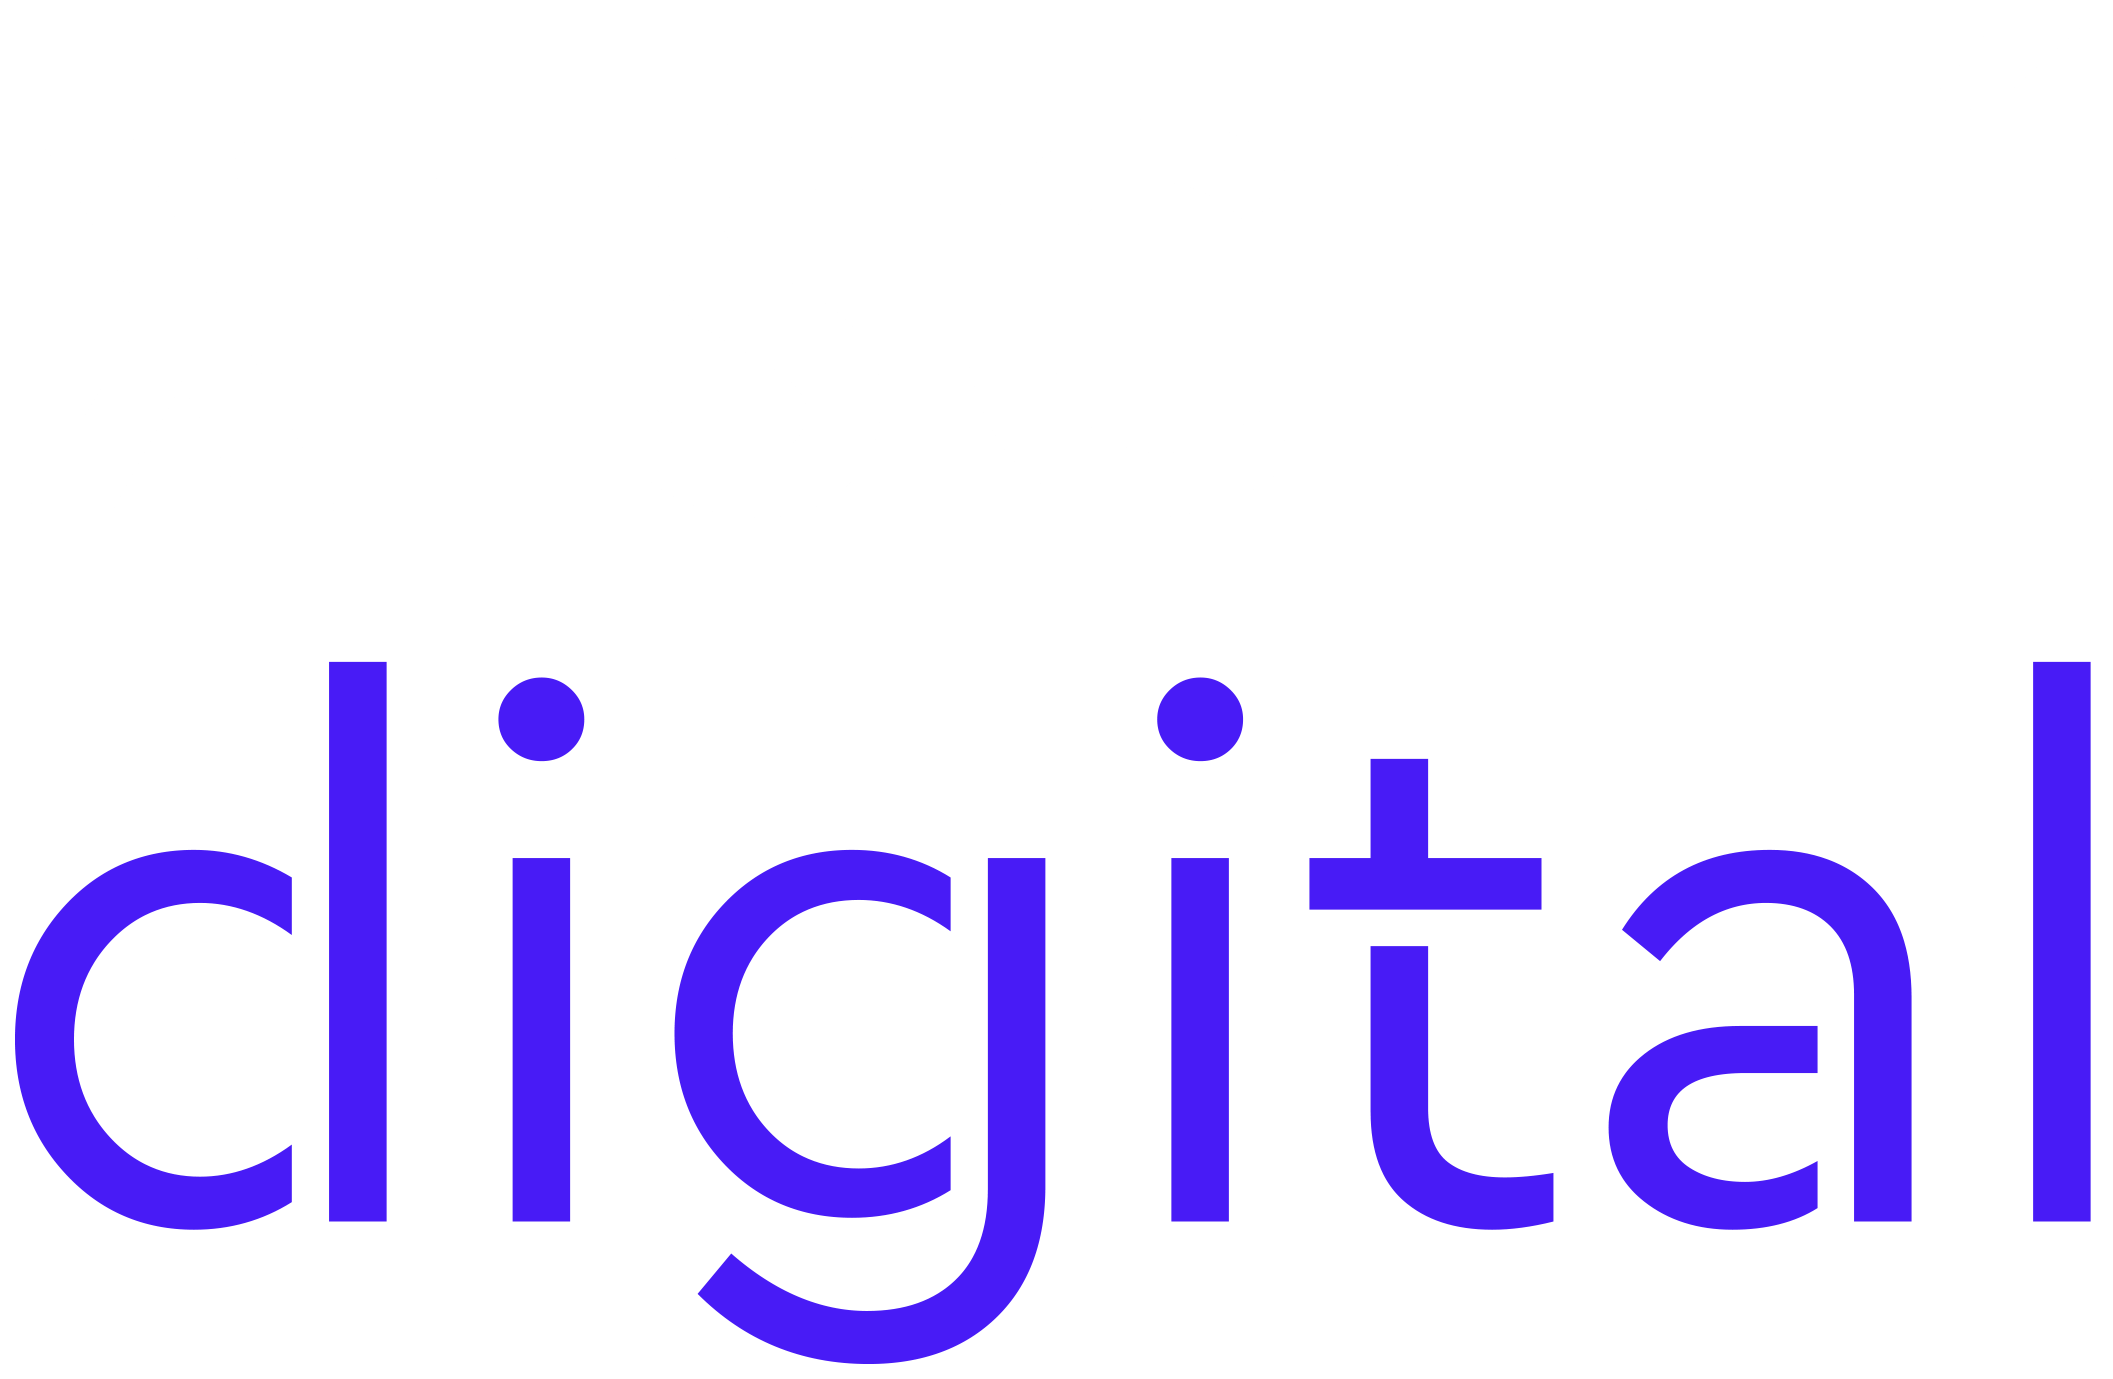 Xische Digital